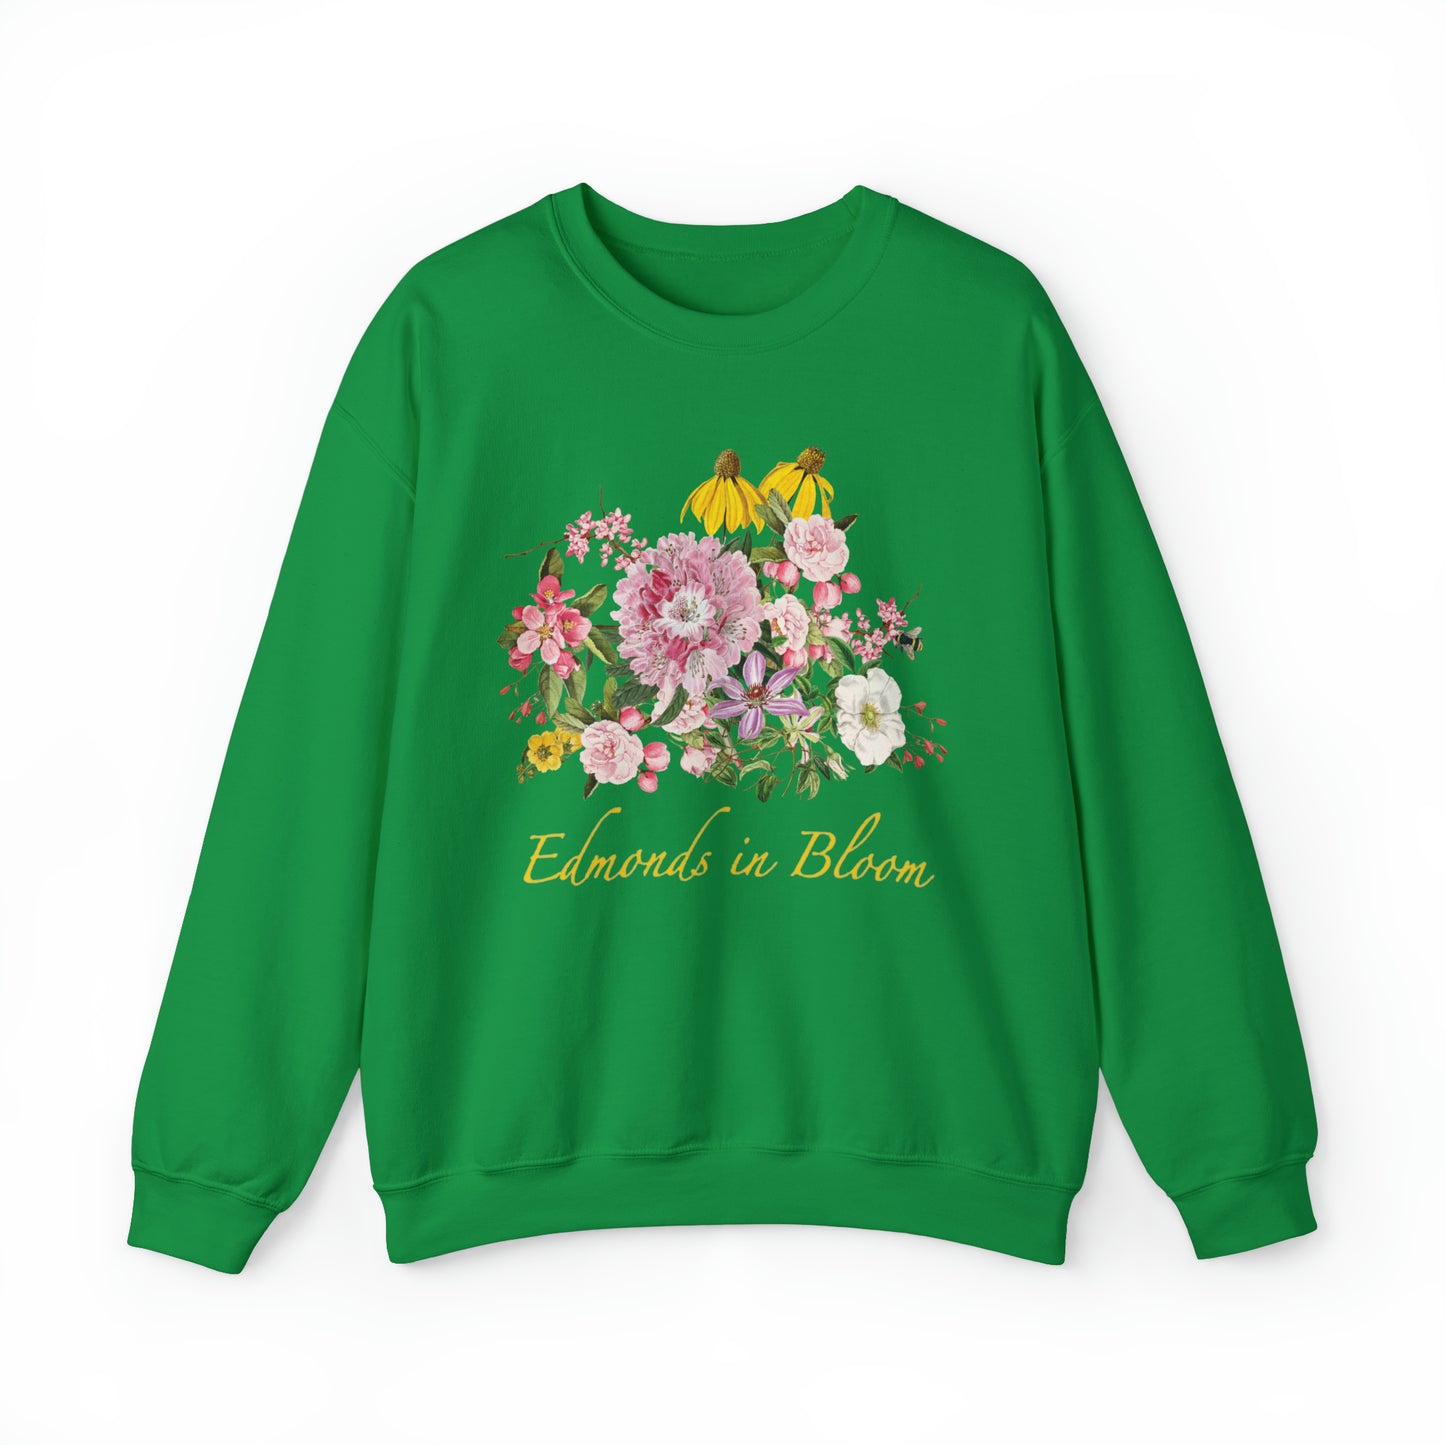 Edmonds in Bloom Unisex Crewneck Sweatshirt